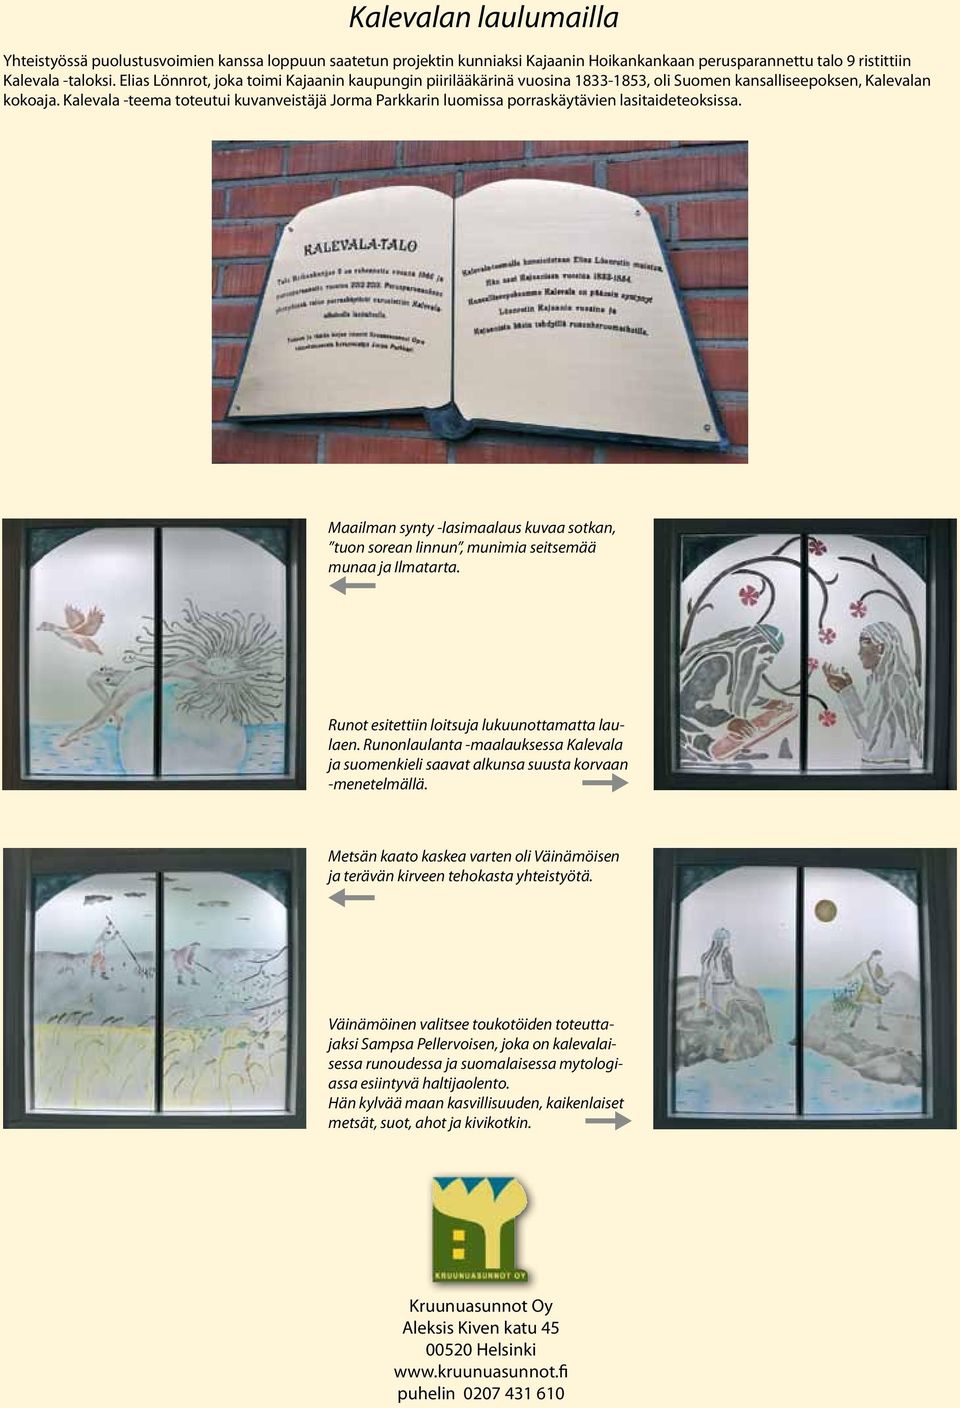 Kalevala -teema toteutui kuvanveistäjä Jorma Parkkarin luomissa porraskäytävien lasitaideteoksissa. Maailman synty -lasimaalaus kuvaa sotkan, tuon sorean linnun, munimia seitsemää munaa ja Ilmatarta.